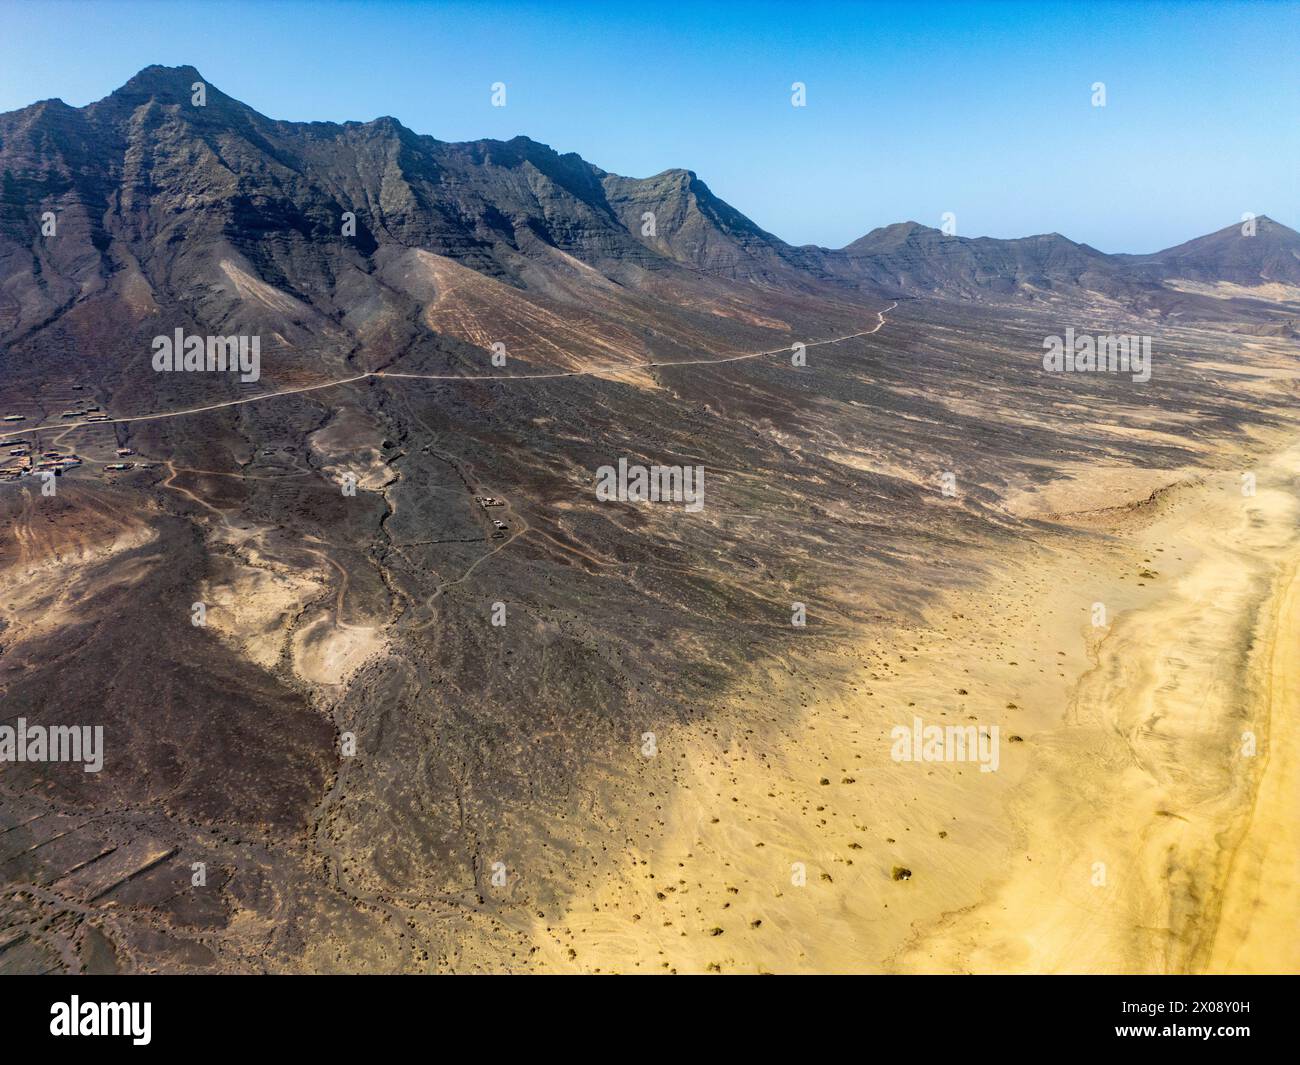 Lo straordinario scatto aereo presenta l'ampio paesaggio desertico e le aspre montagne di Cofete, situato nel sud di Fuerteventura Foto Stock